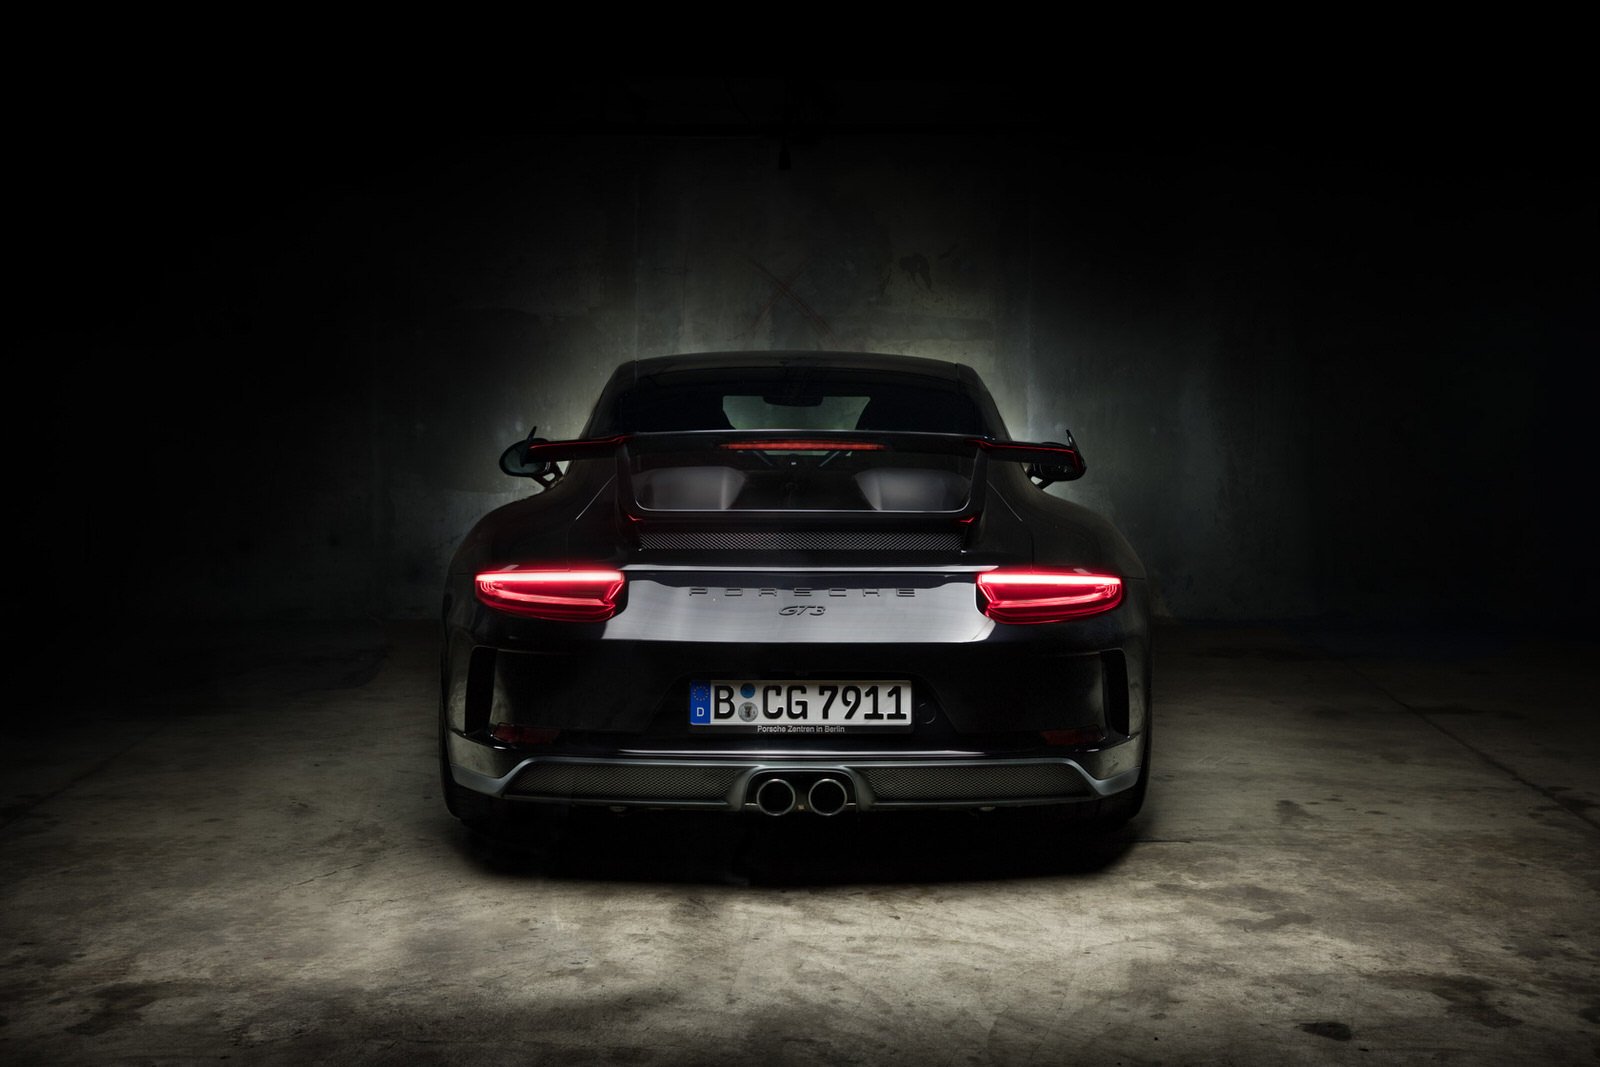 klassik kontor duesseldorf 2017 Porsche 991 Coupé GT3 - Schwarz pic 01.jpg